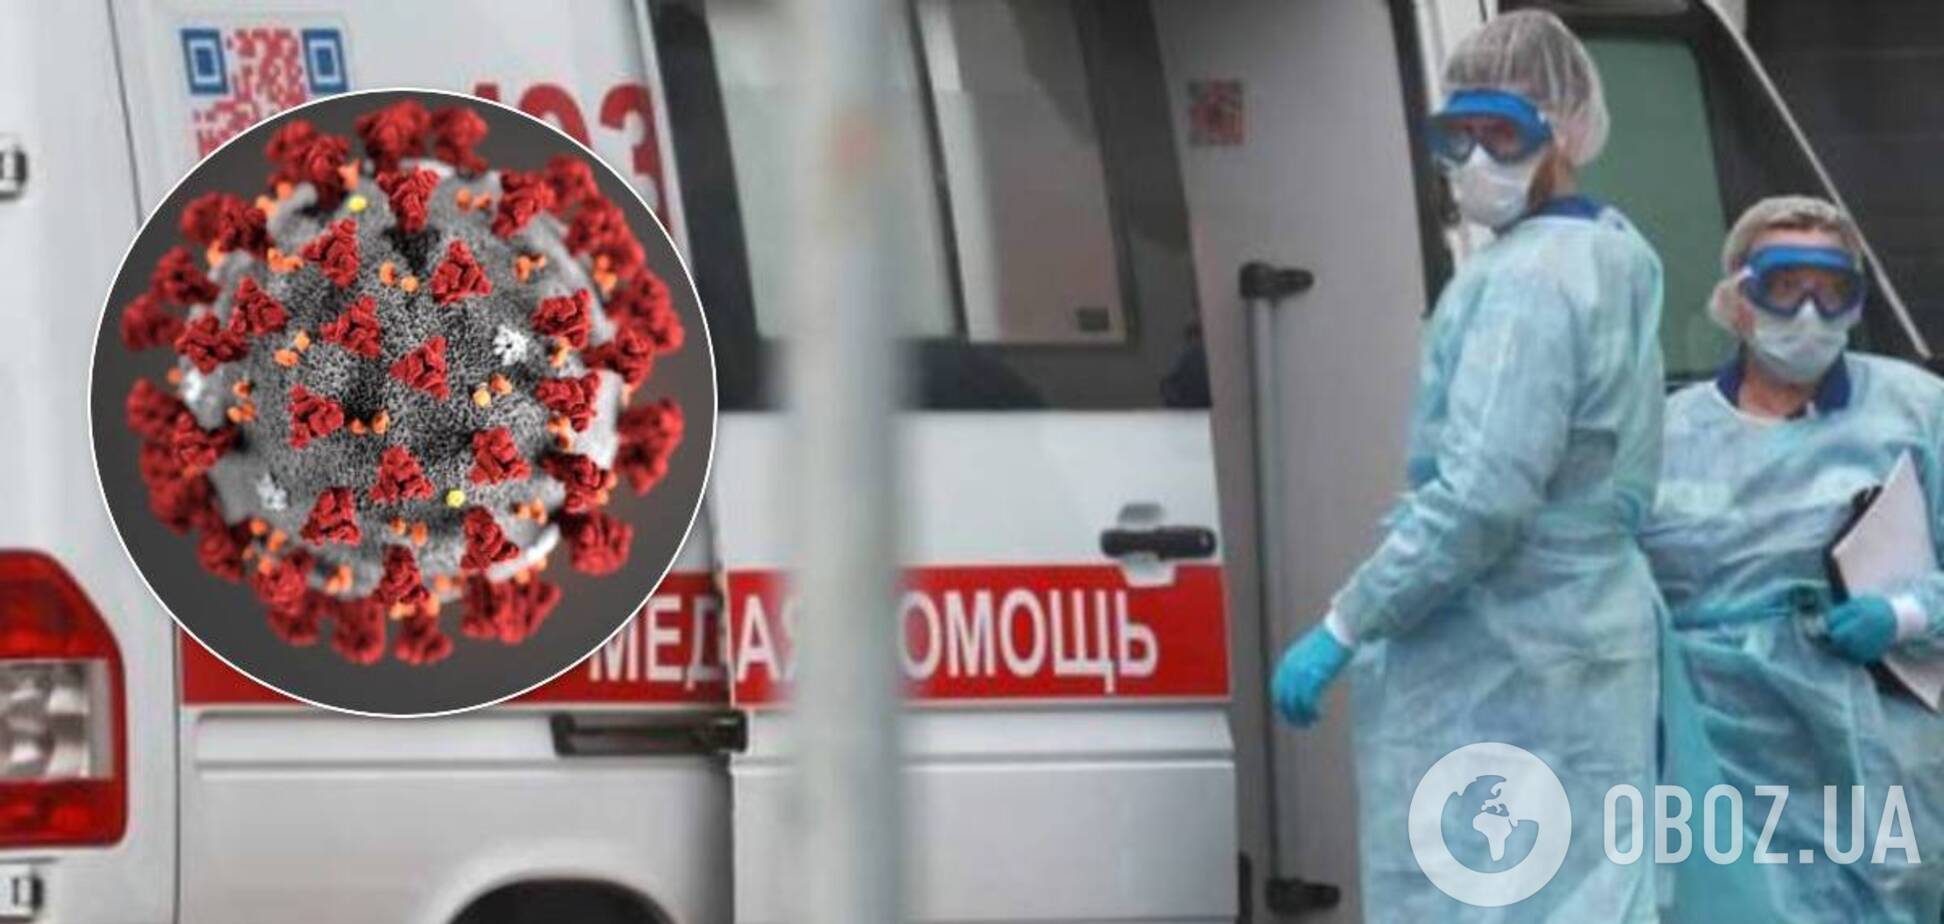 Епідемія COVID-19 в Україні вщухне. Докладний прогноз від НАН